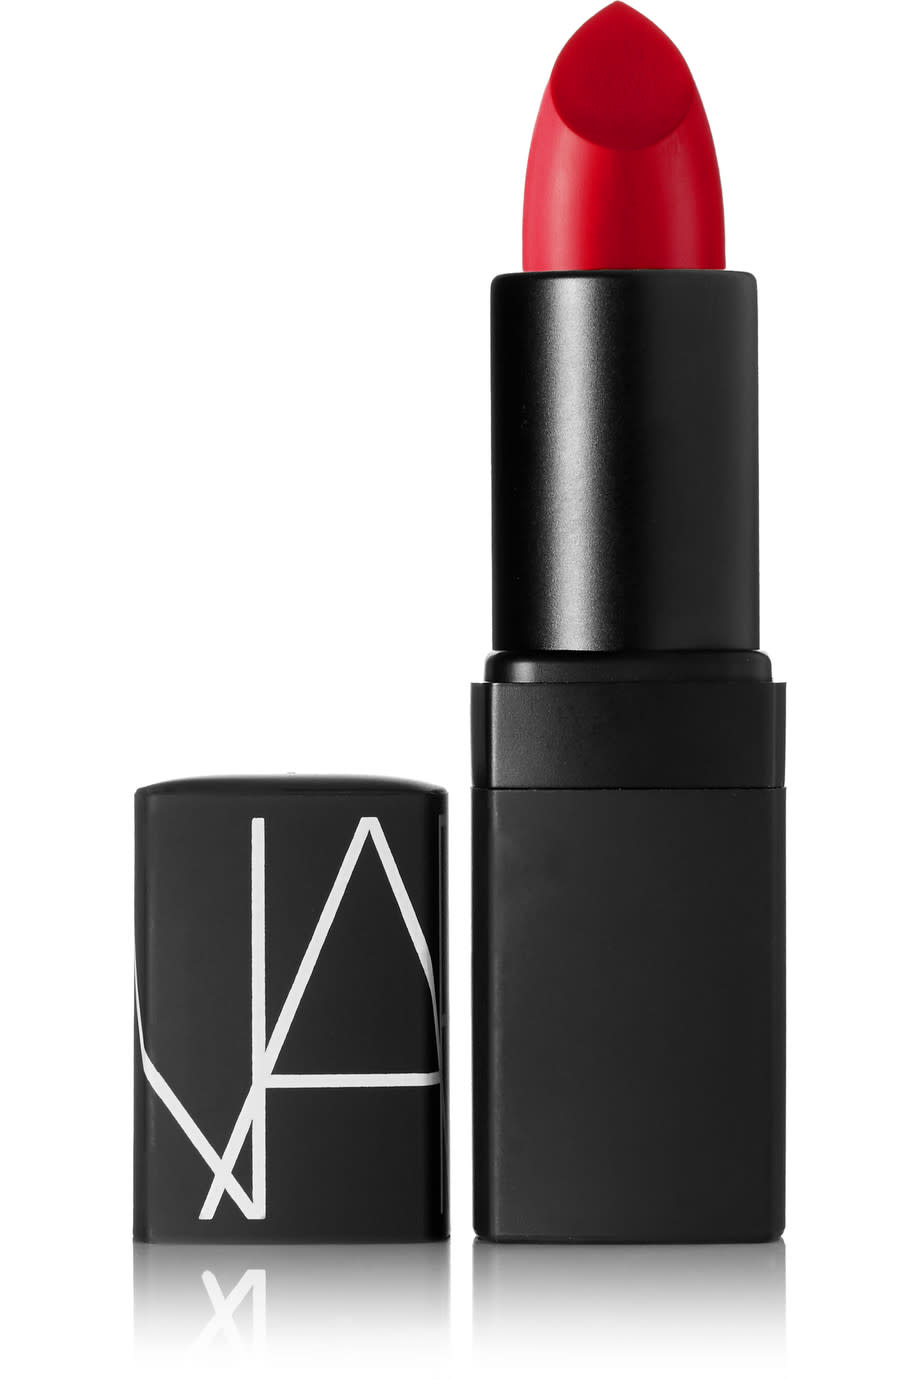 Popular on Polyvore: NARS Semi Matte Lipstick in Jungle Red